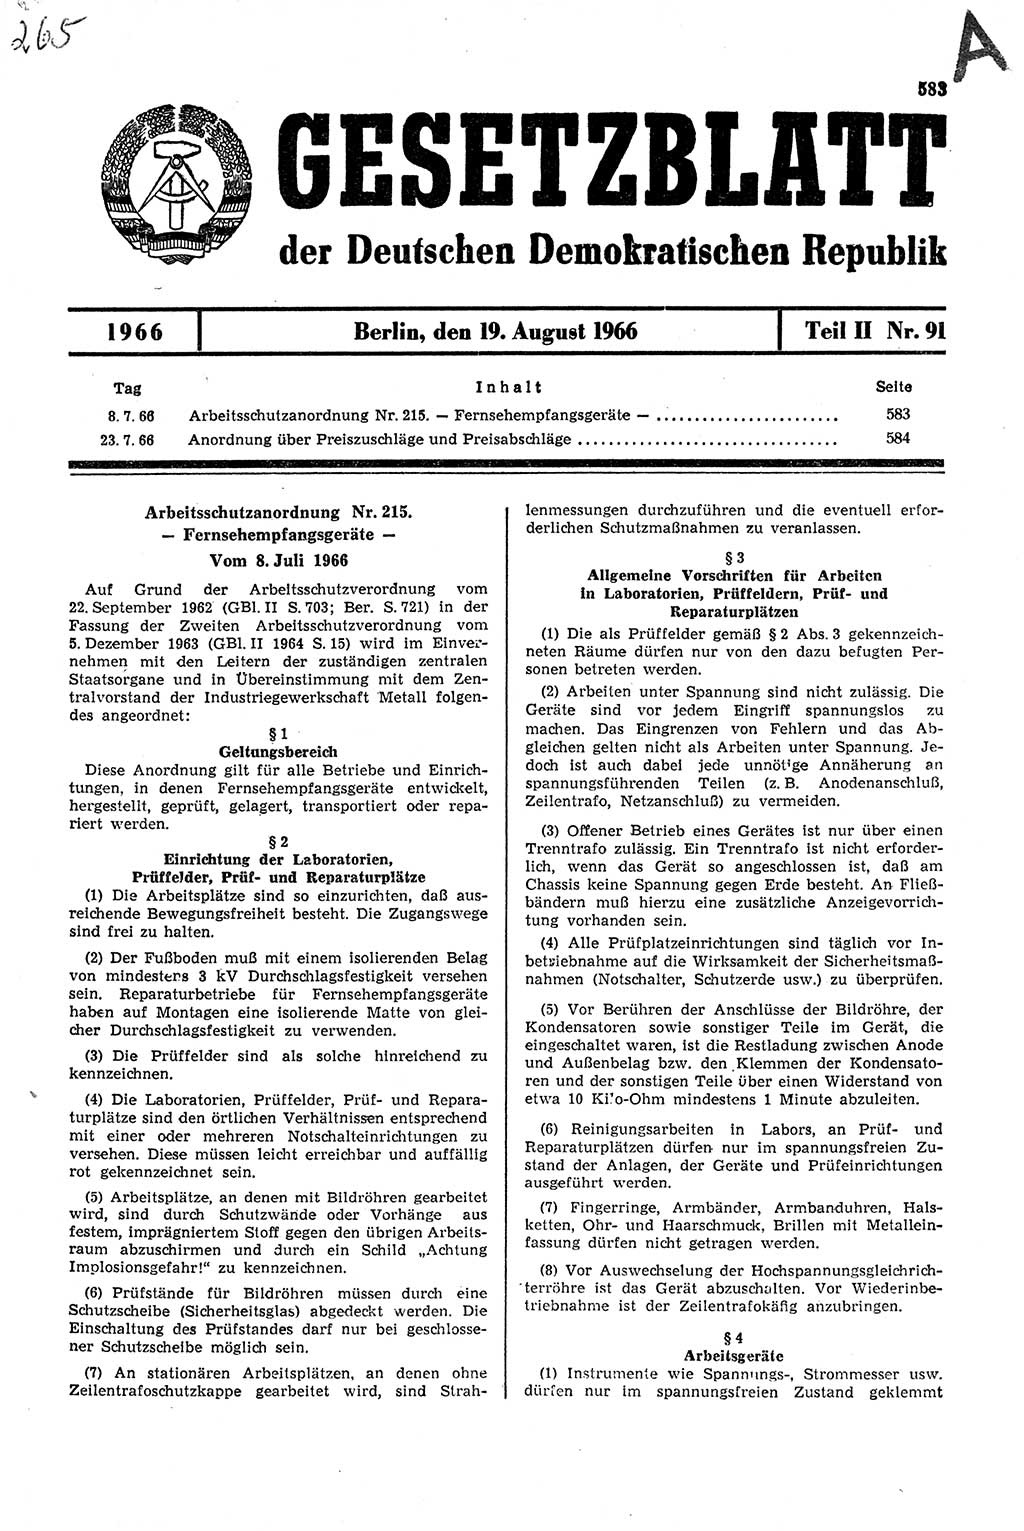 Gesetzblatt (GBl.) der Deutschen Demokratischen Republik (DDR) Teil ⅠⅠ 1966, Seite 583 (GBl. DDR ⅠⅠ 1966, S. 583)